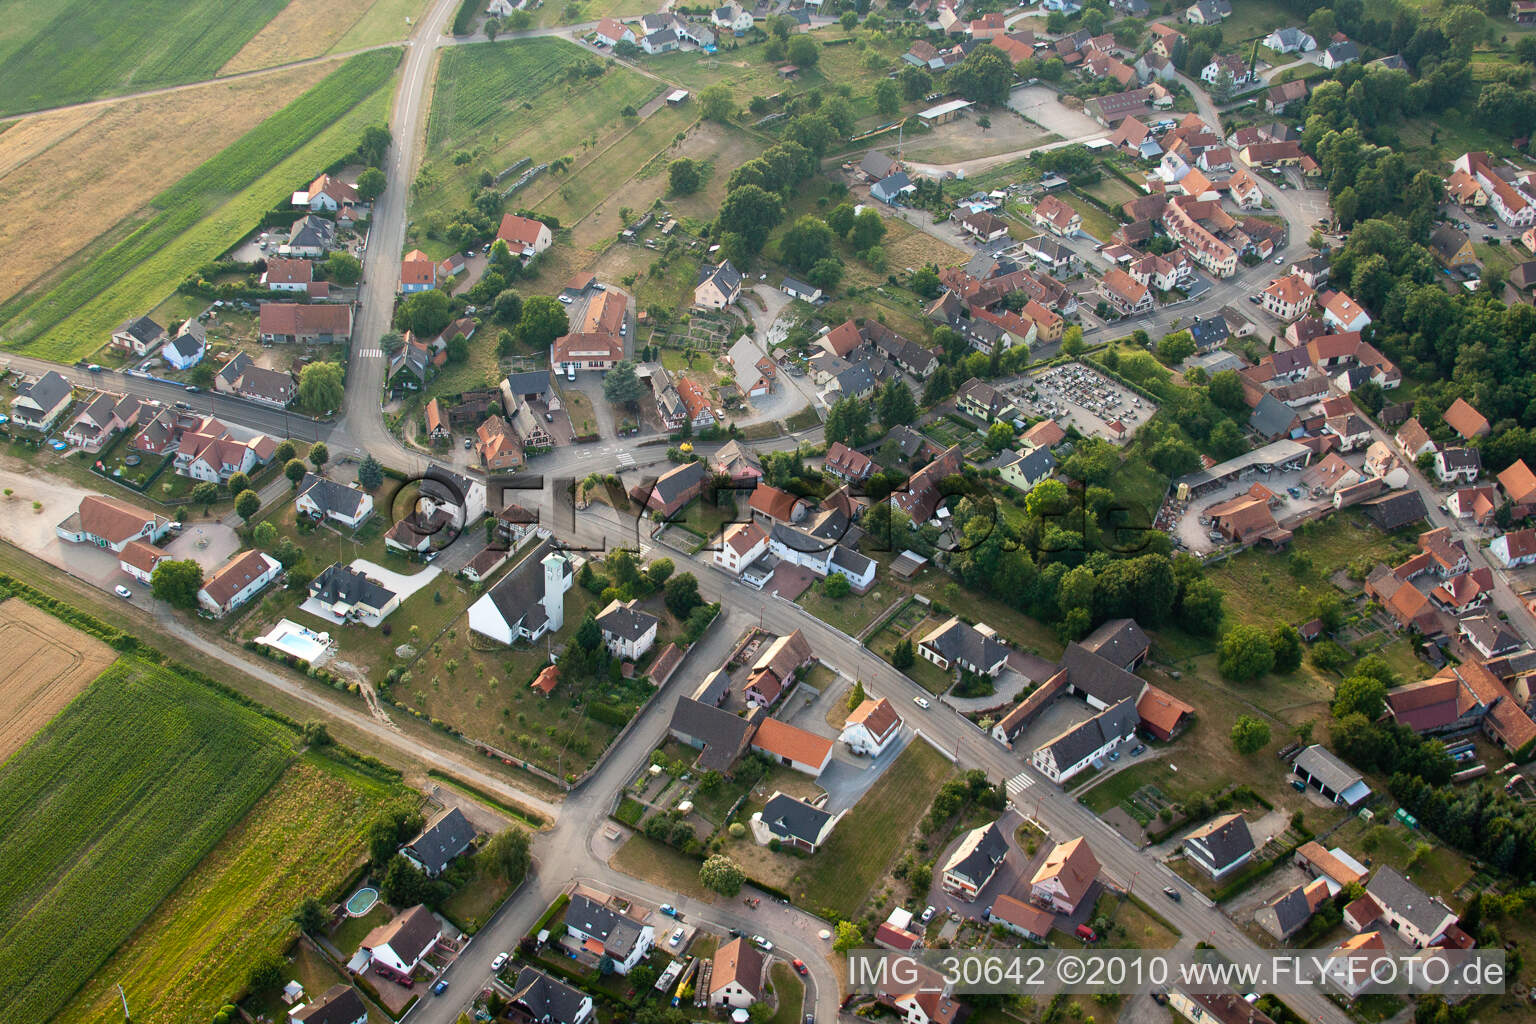 Aerial view of Scheibenhardt in Scheibenhard in the state Bas-Rhin, France